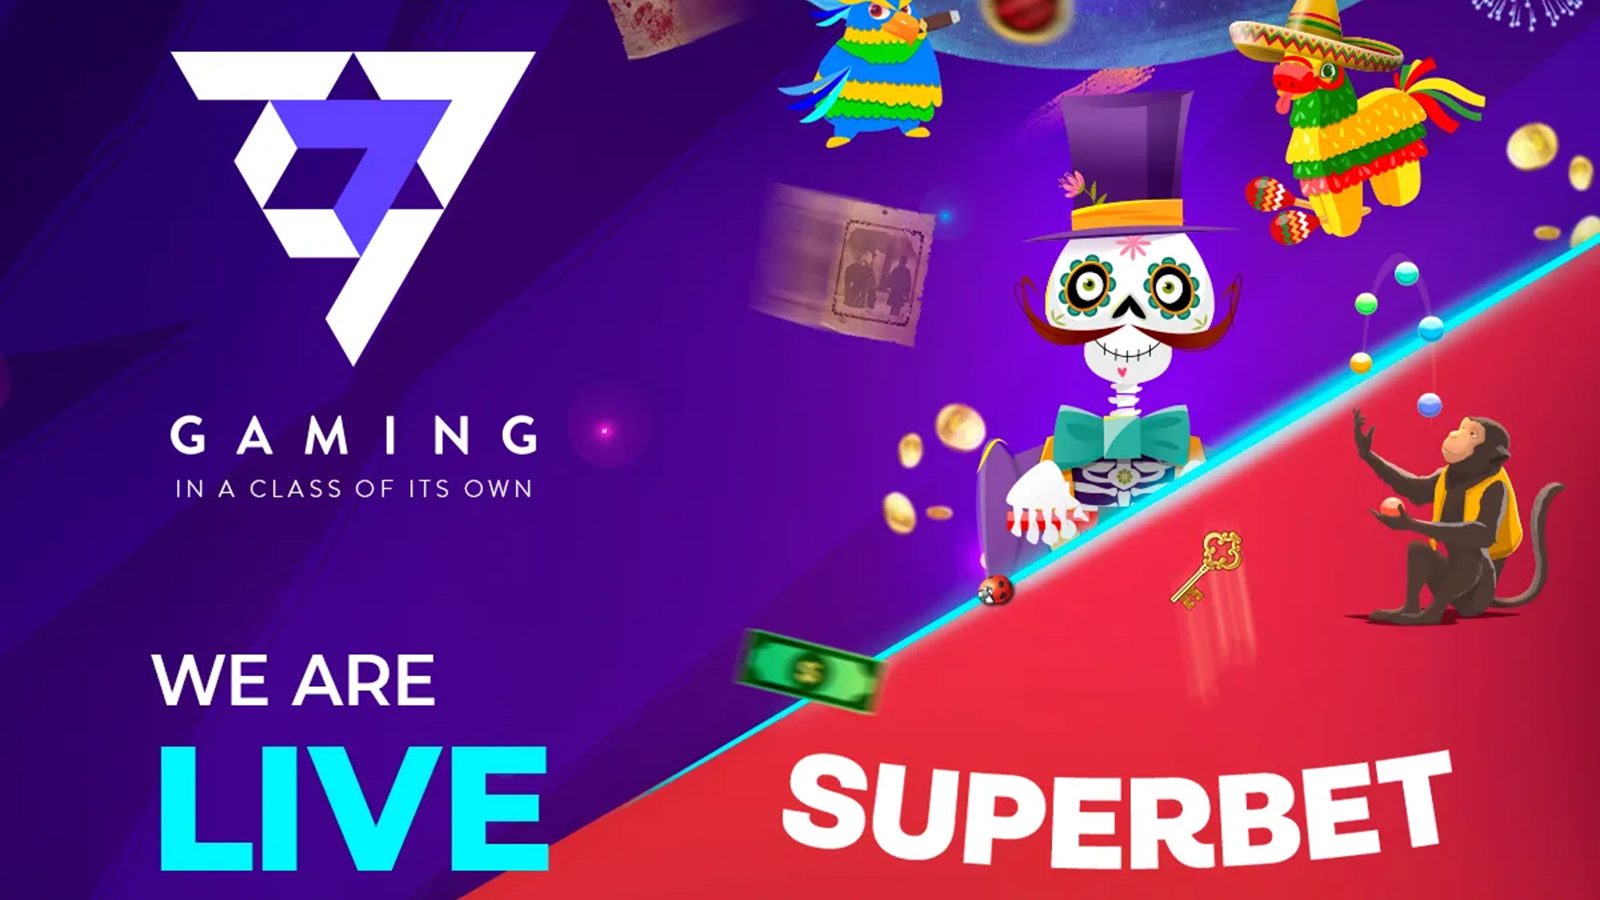 7777 Gaming Goes Live on Superbet